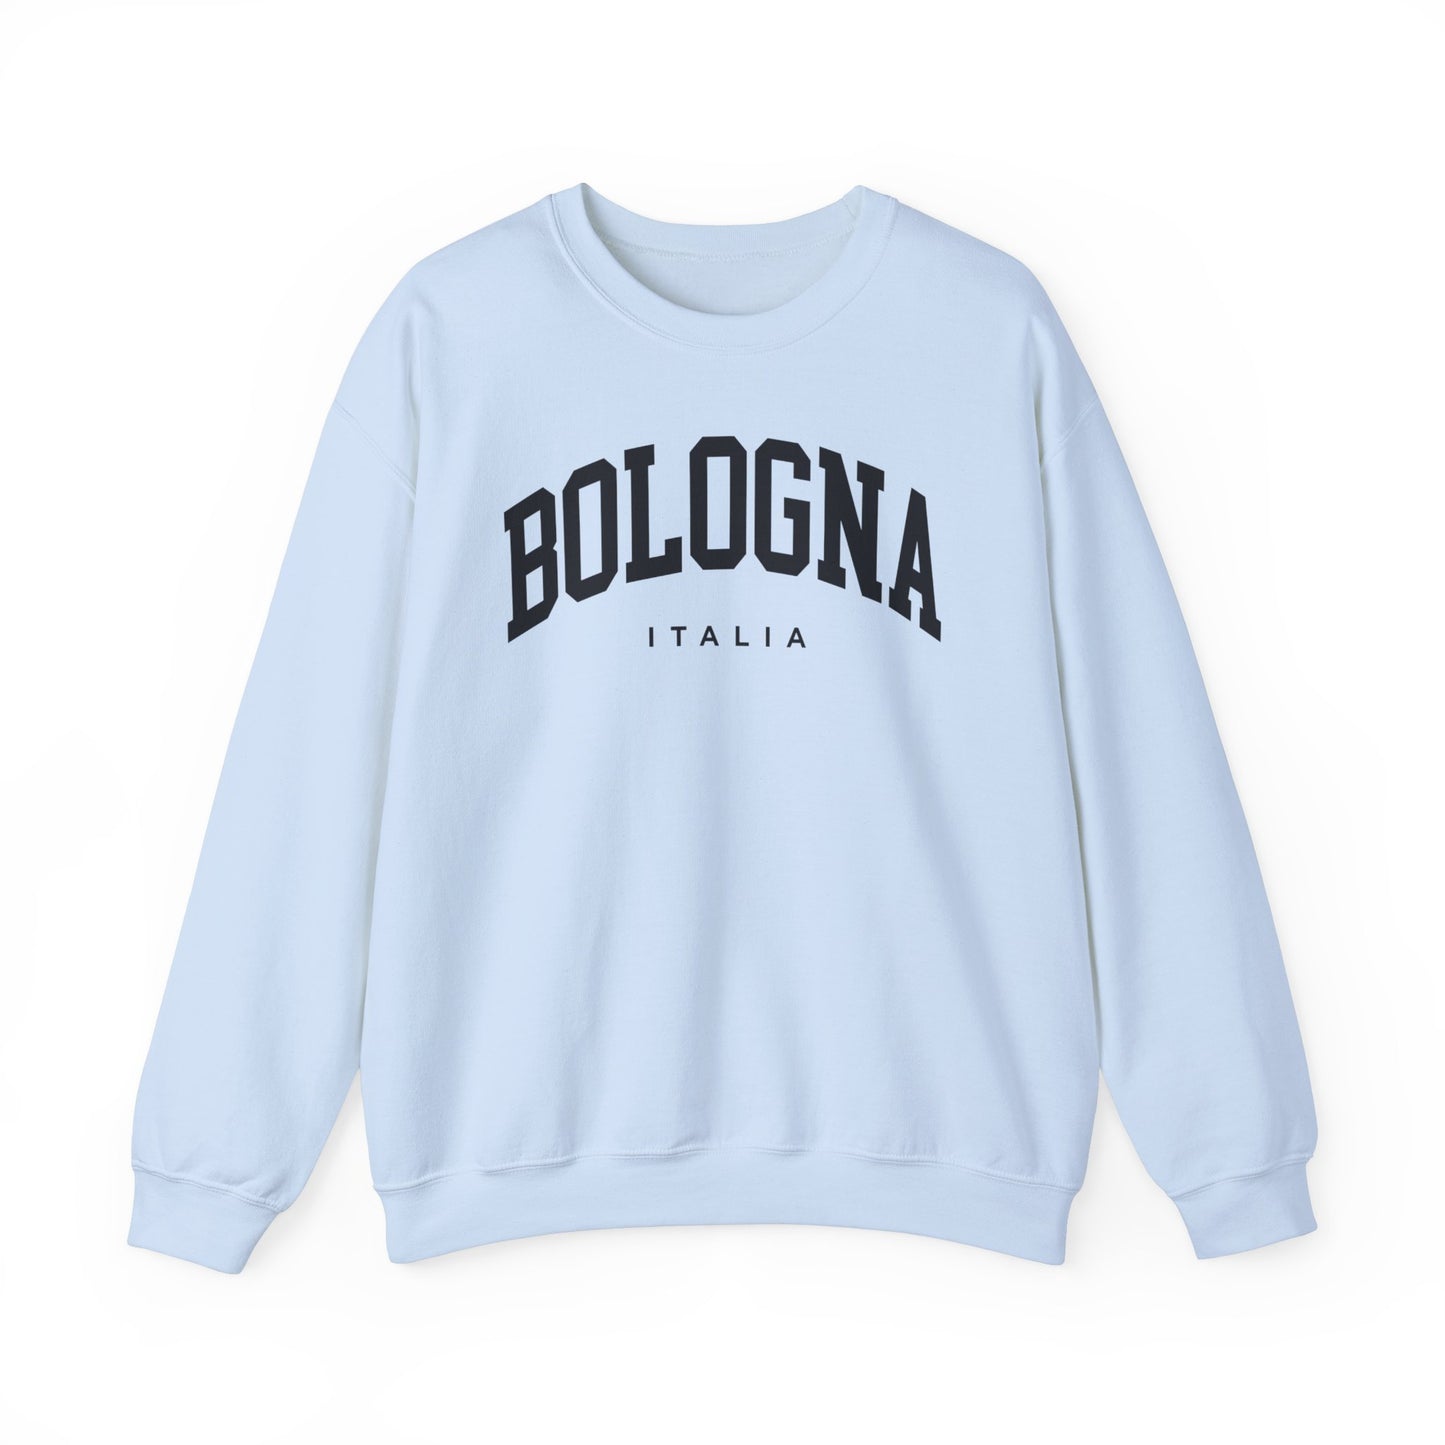 Bologna Italy Sweatshirt